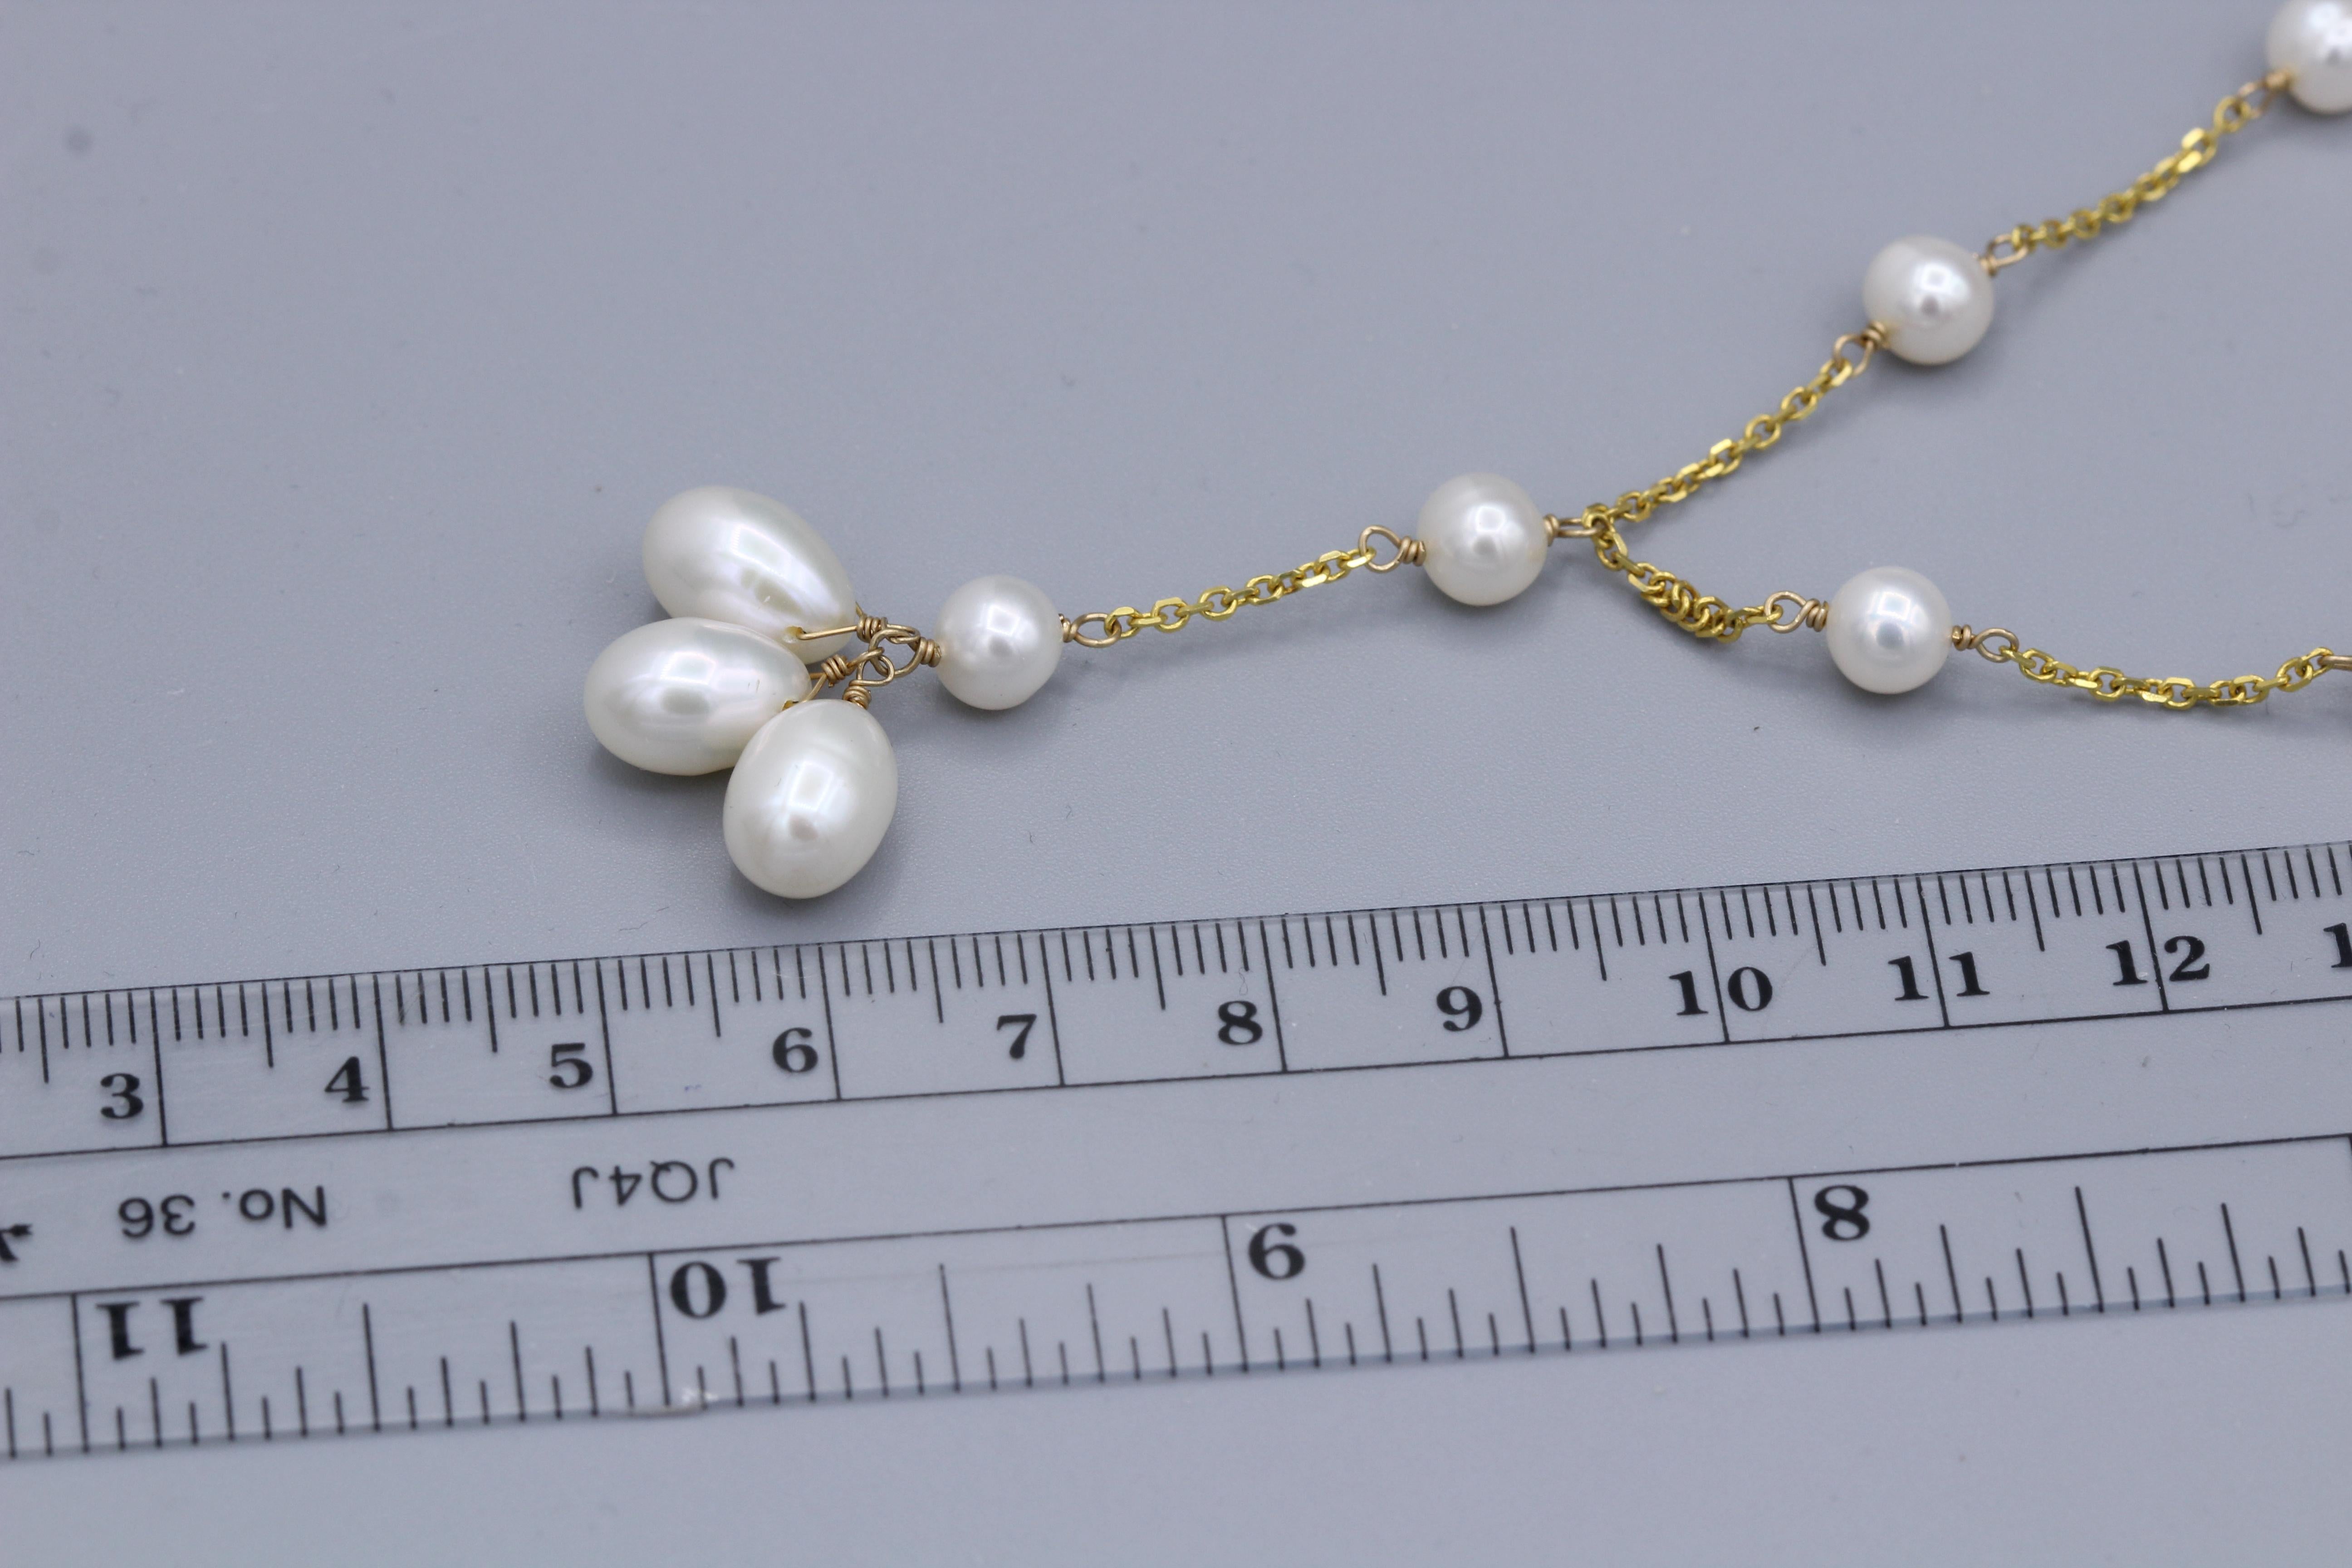 Collier de perles en perles, style fil de fer pendulaire 
or jaune 14k
Longueur 16.5' Inch
Longueur de la pampille : environ 1,5 pouce
Perles d'eau douce 5.0 mm et ovale 7x10 mm
Blocage de l'anneau élastique
Poids total  9.4 grammes

